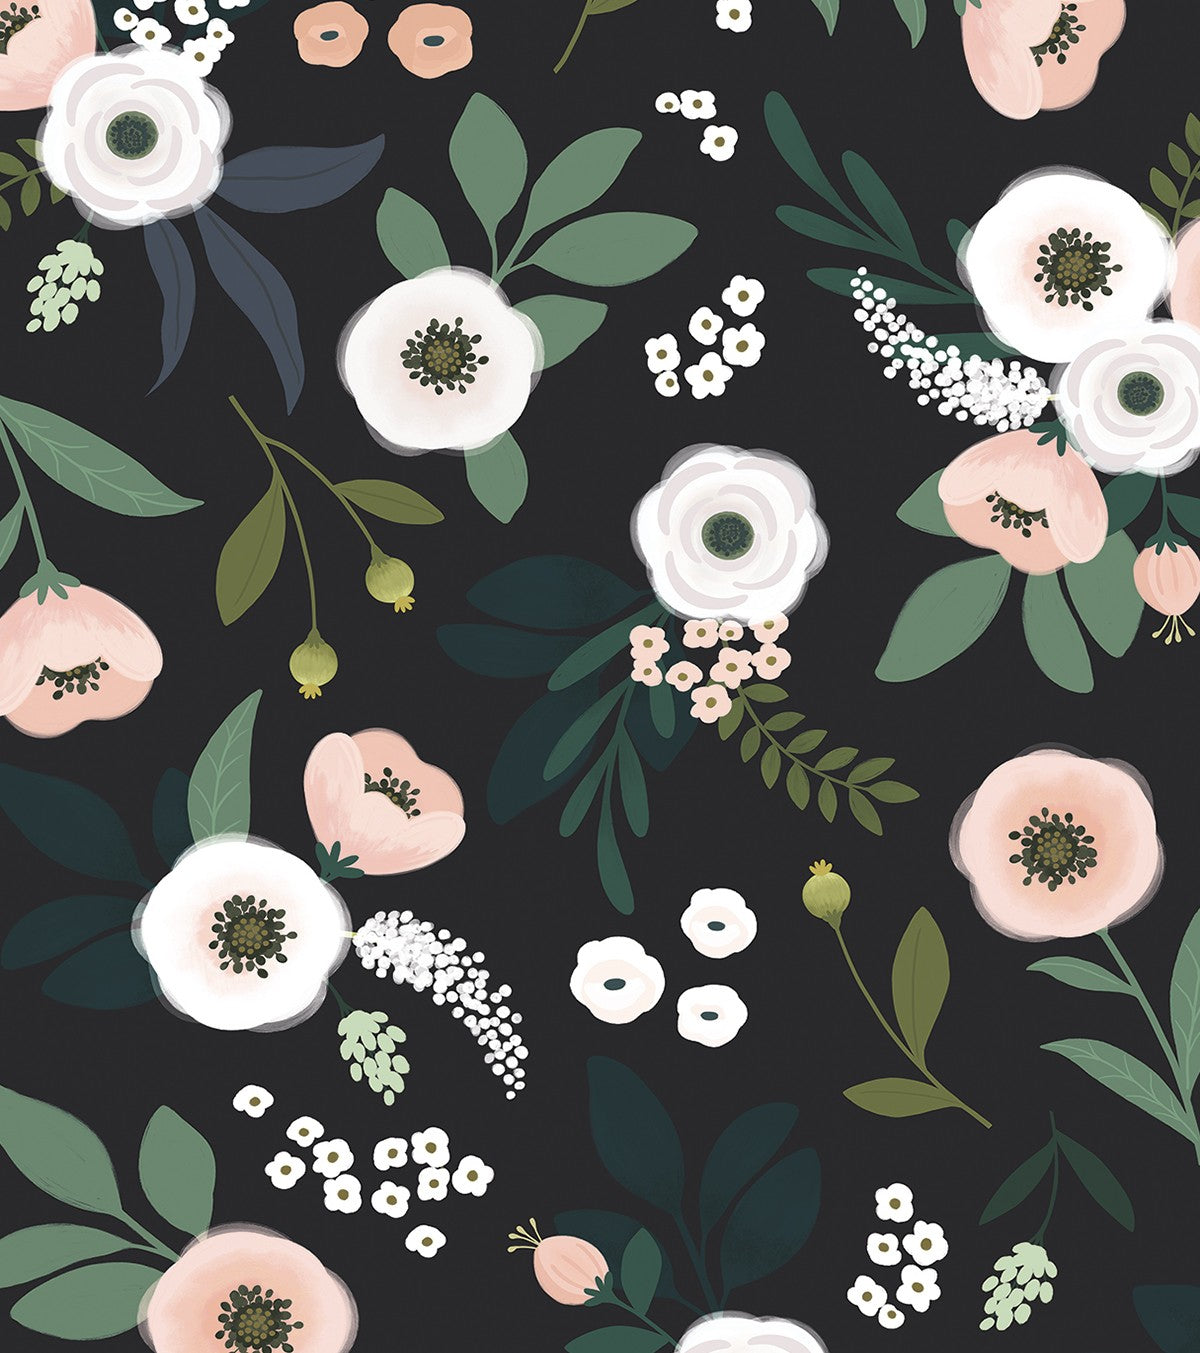 WONDERLAND - Children's wallpaper - Anemone flower motif